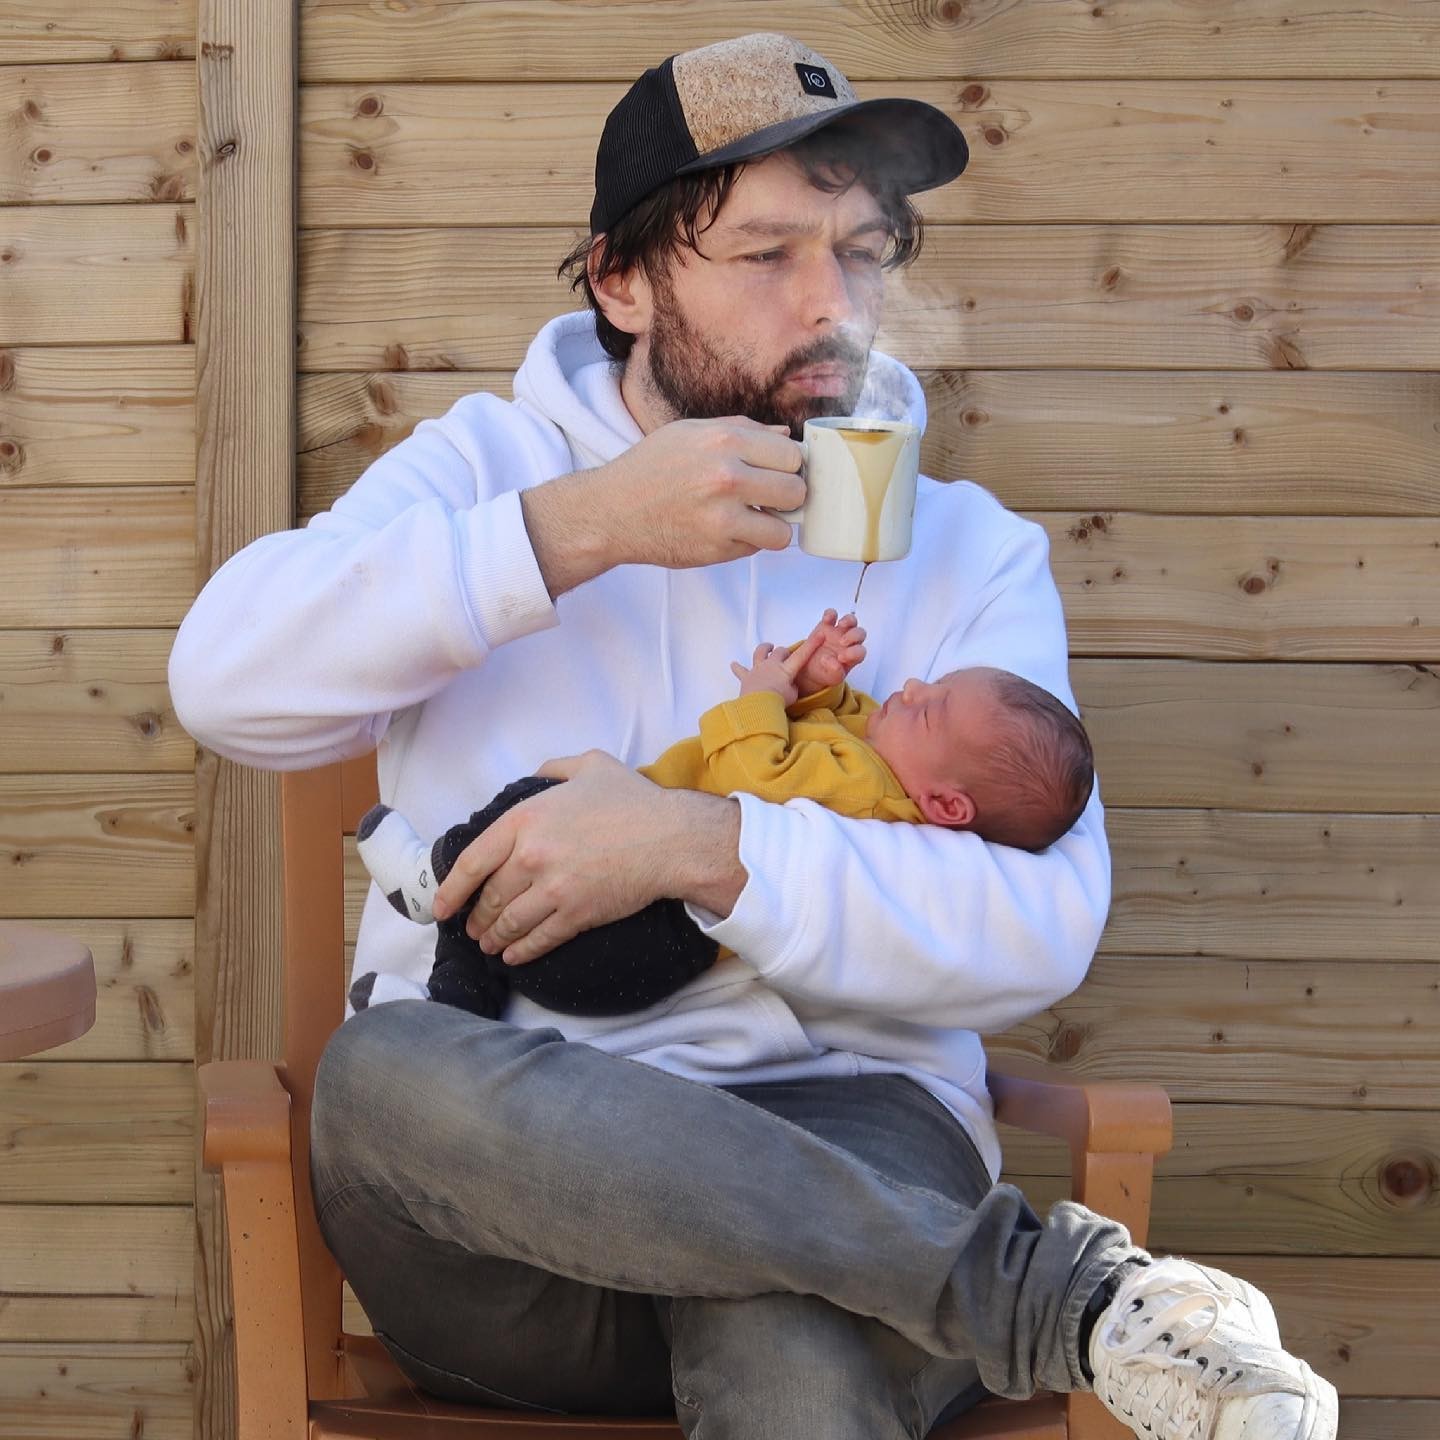 Kenny com a caçula no colo, enquanto toma café (Foto: Reprodução/Instagram)